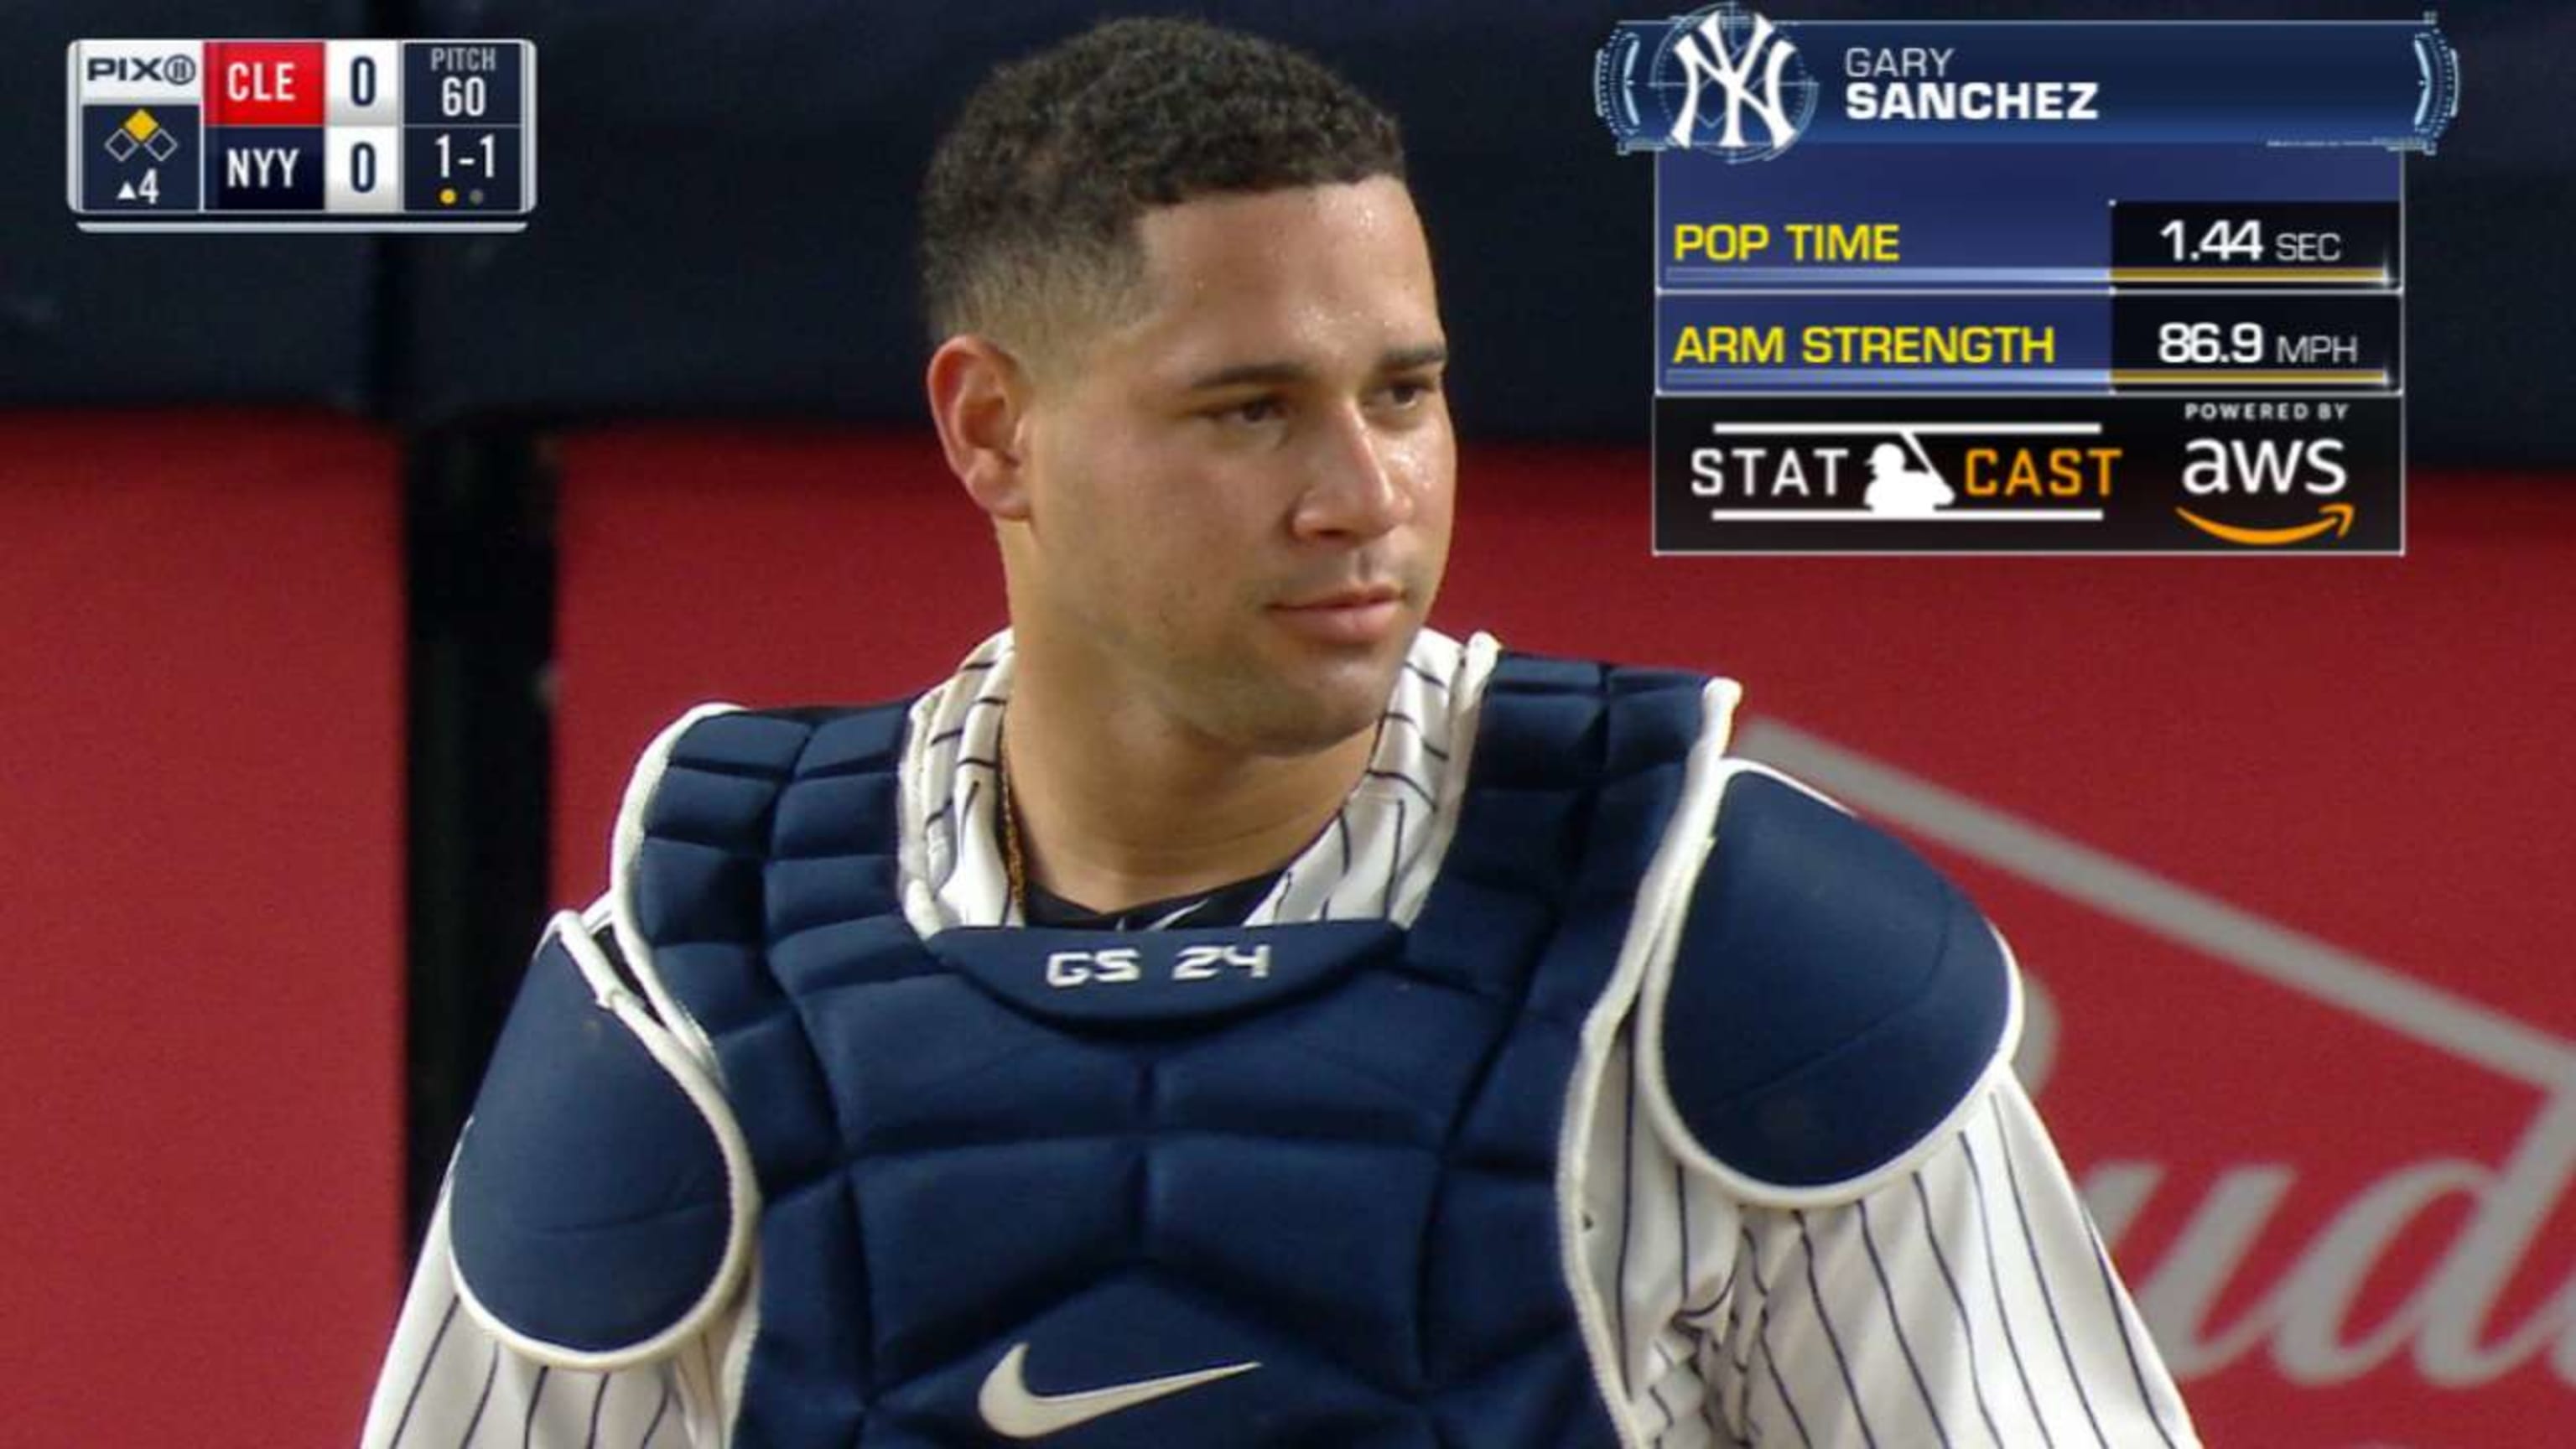 New York Yankees catcher Gary Sanchez isn't going anywhere